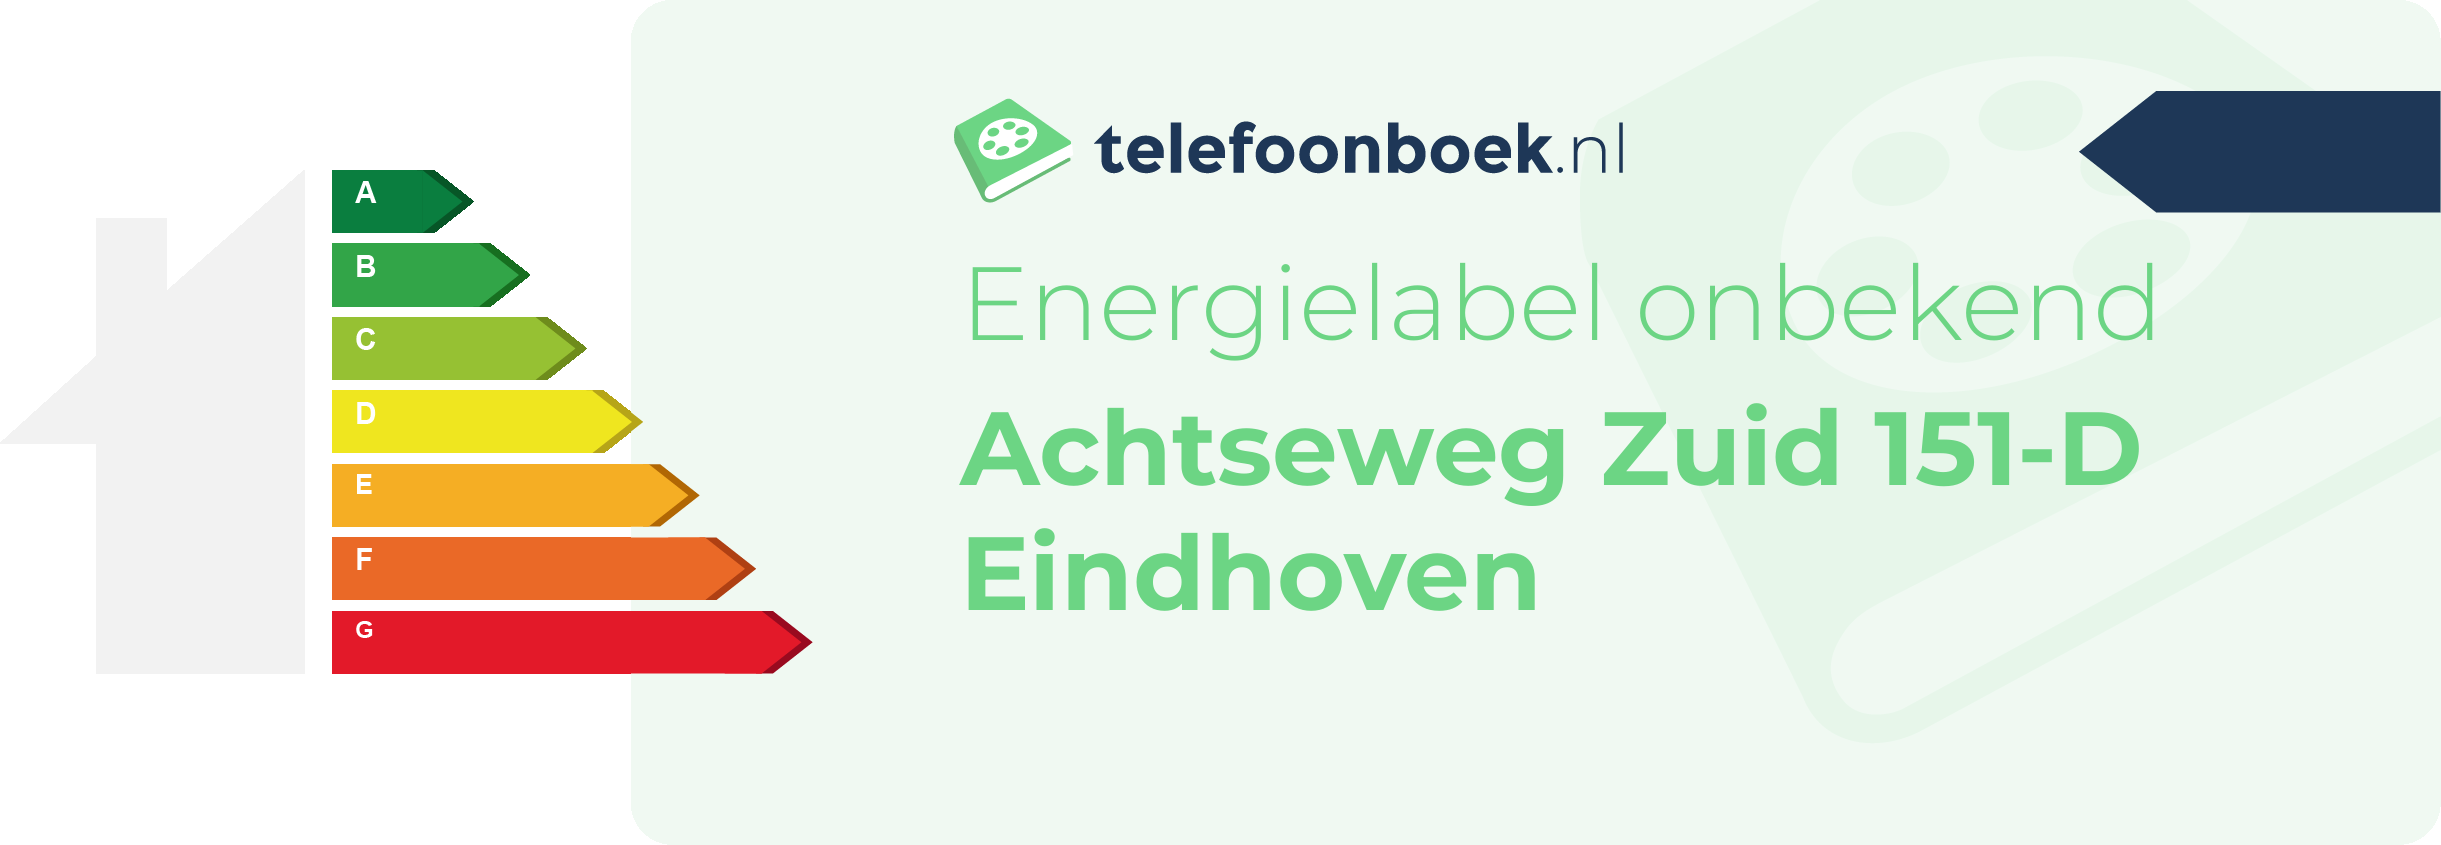 Energielabel Achtseweg Zuid 151-D Eindhoven